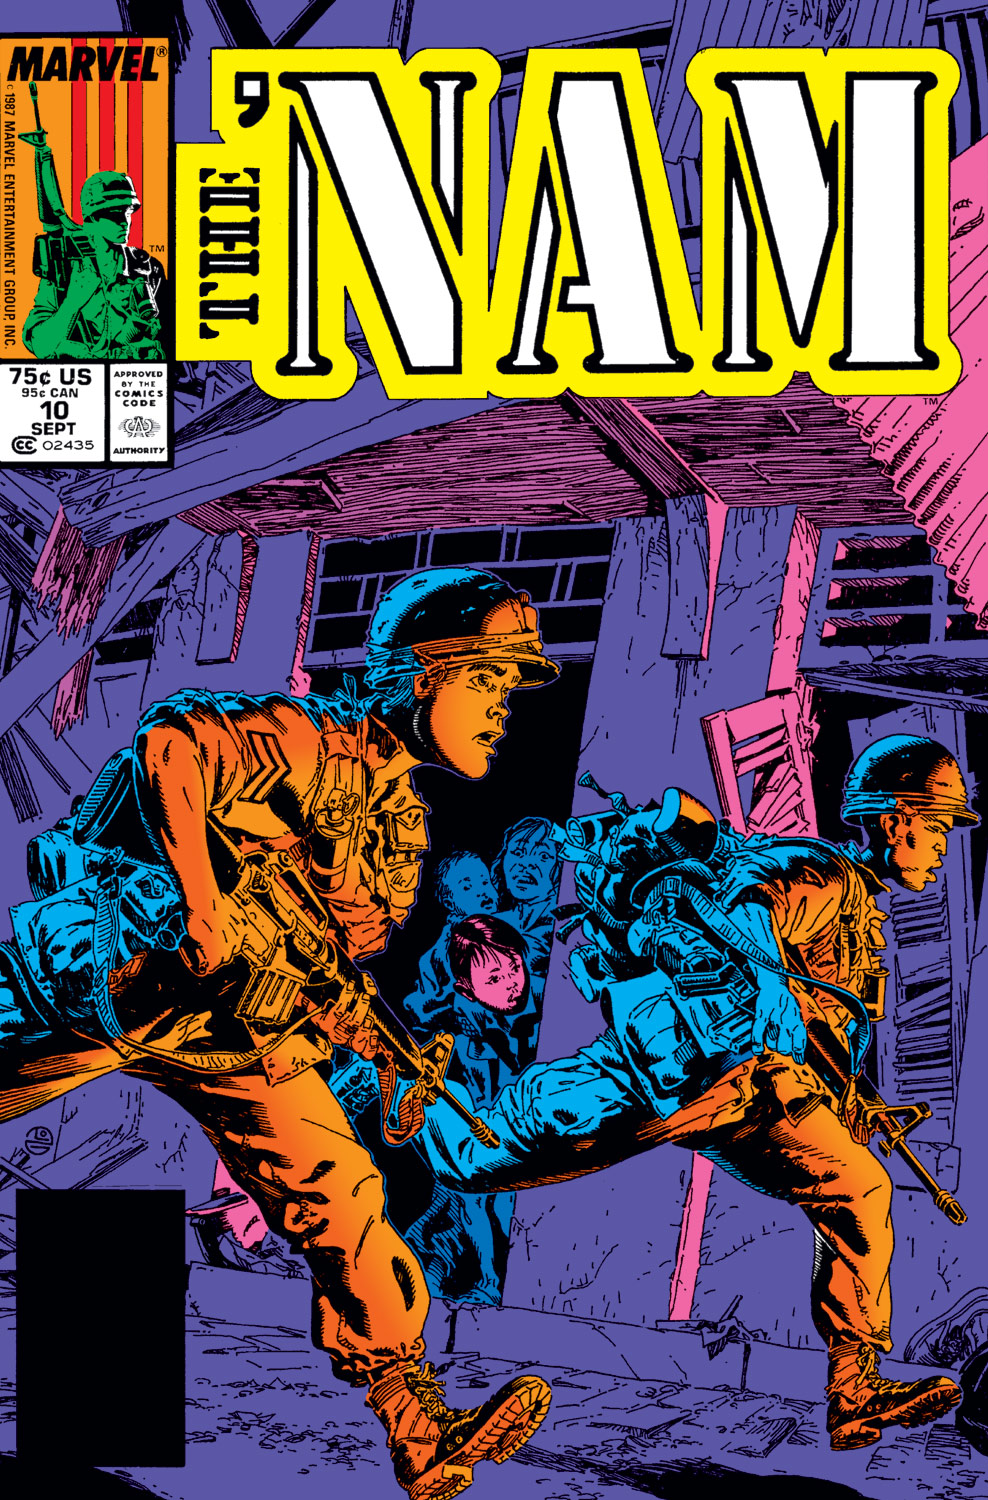 The 'NAM (1986) #10